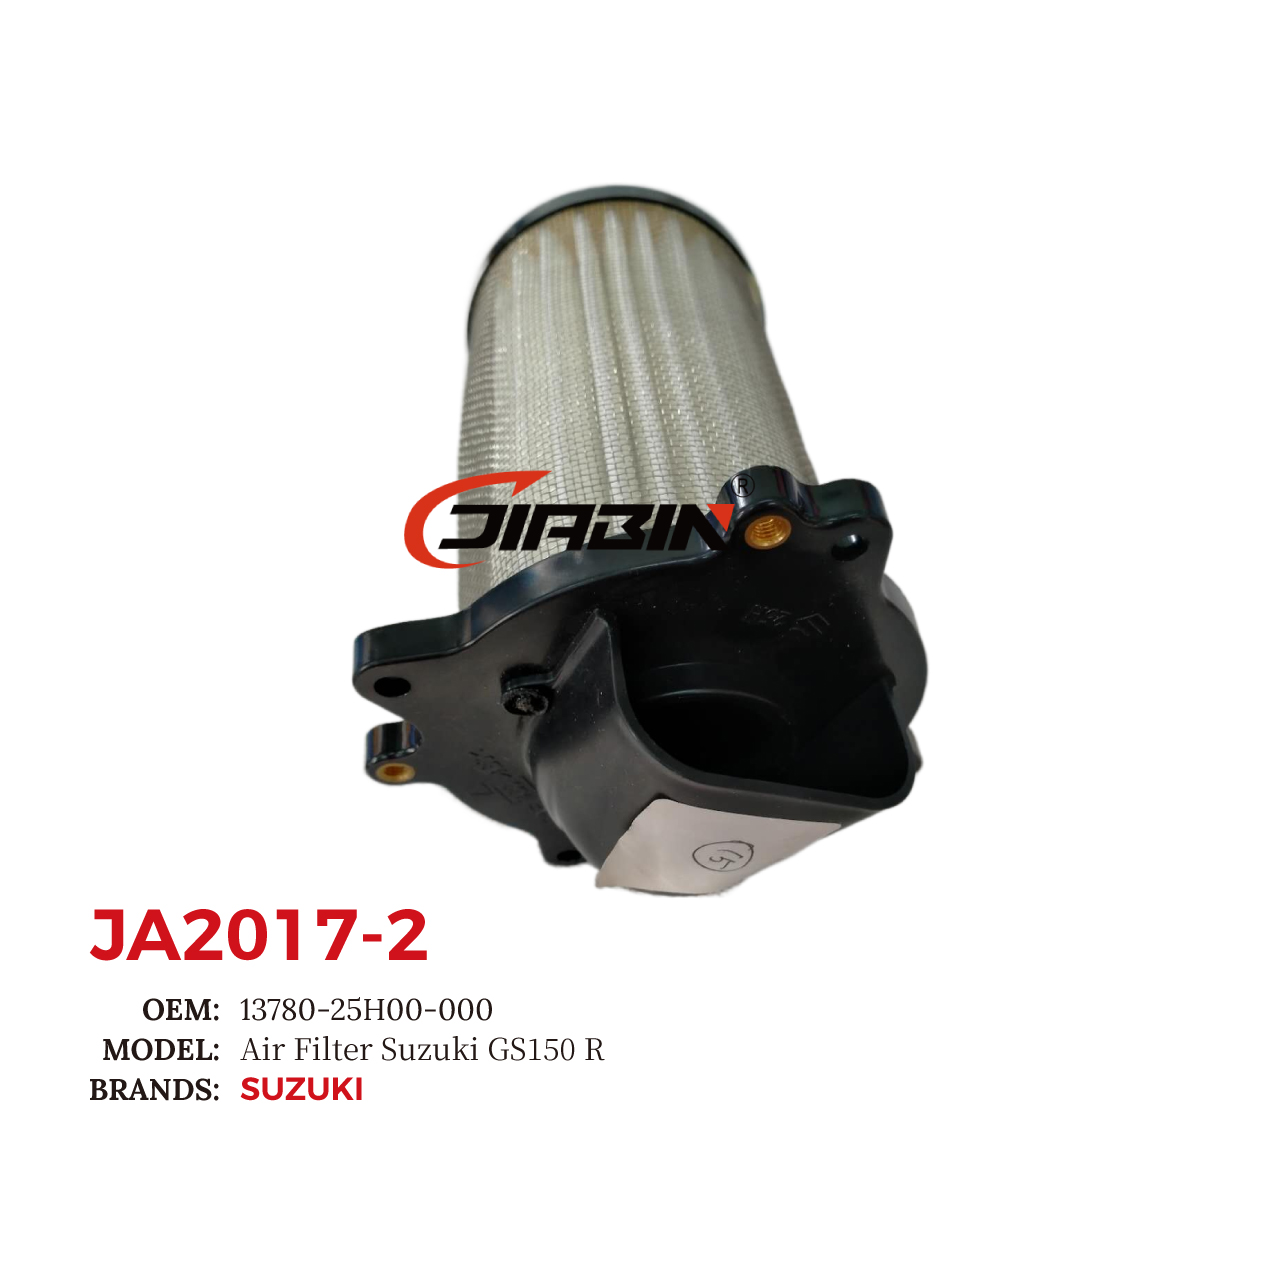 images/JA2017-2/JA2017-2_JB_1.jpg